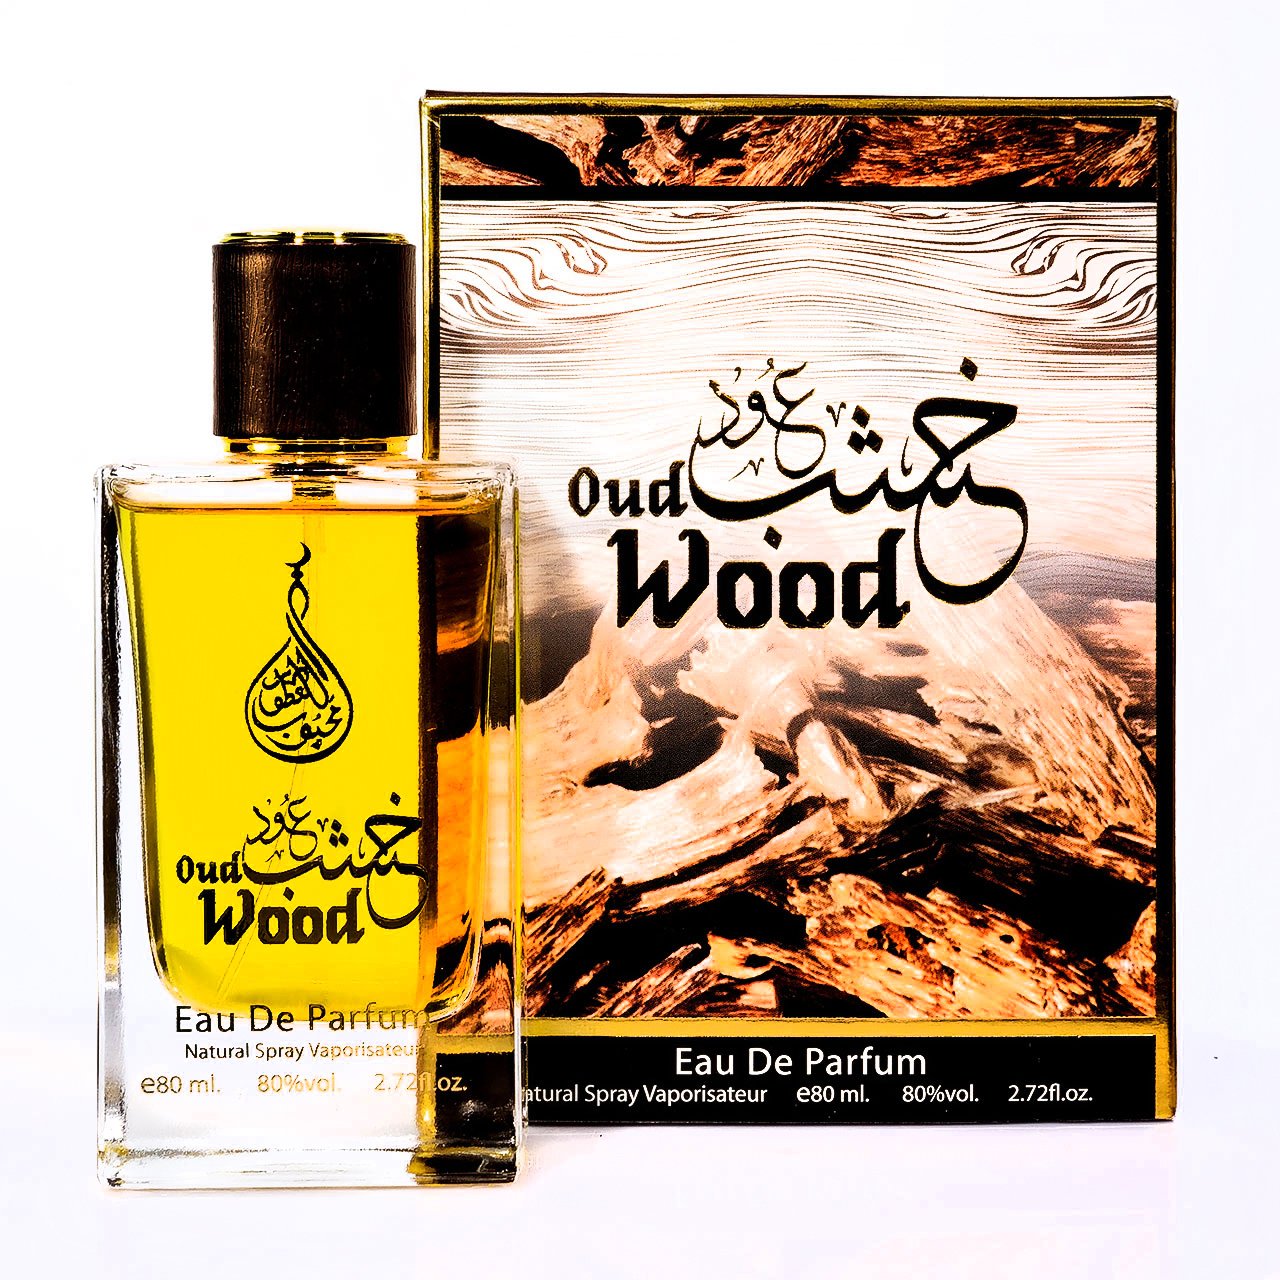 Oud Wood Eau De Parfum 80ml Value Pack of 2 